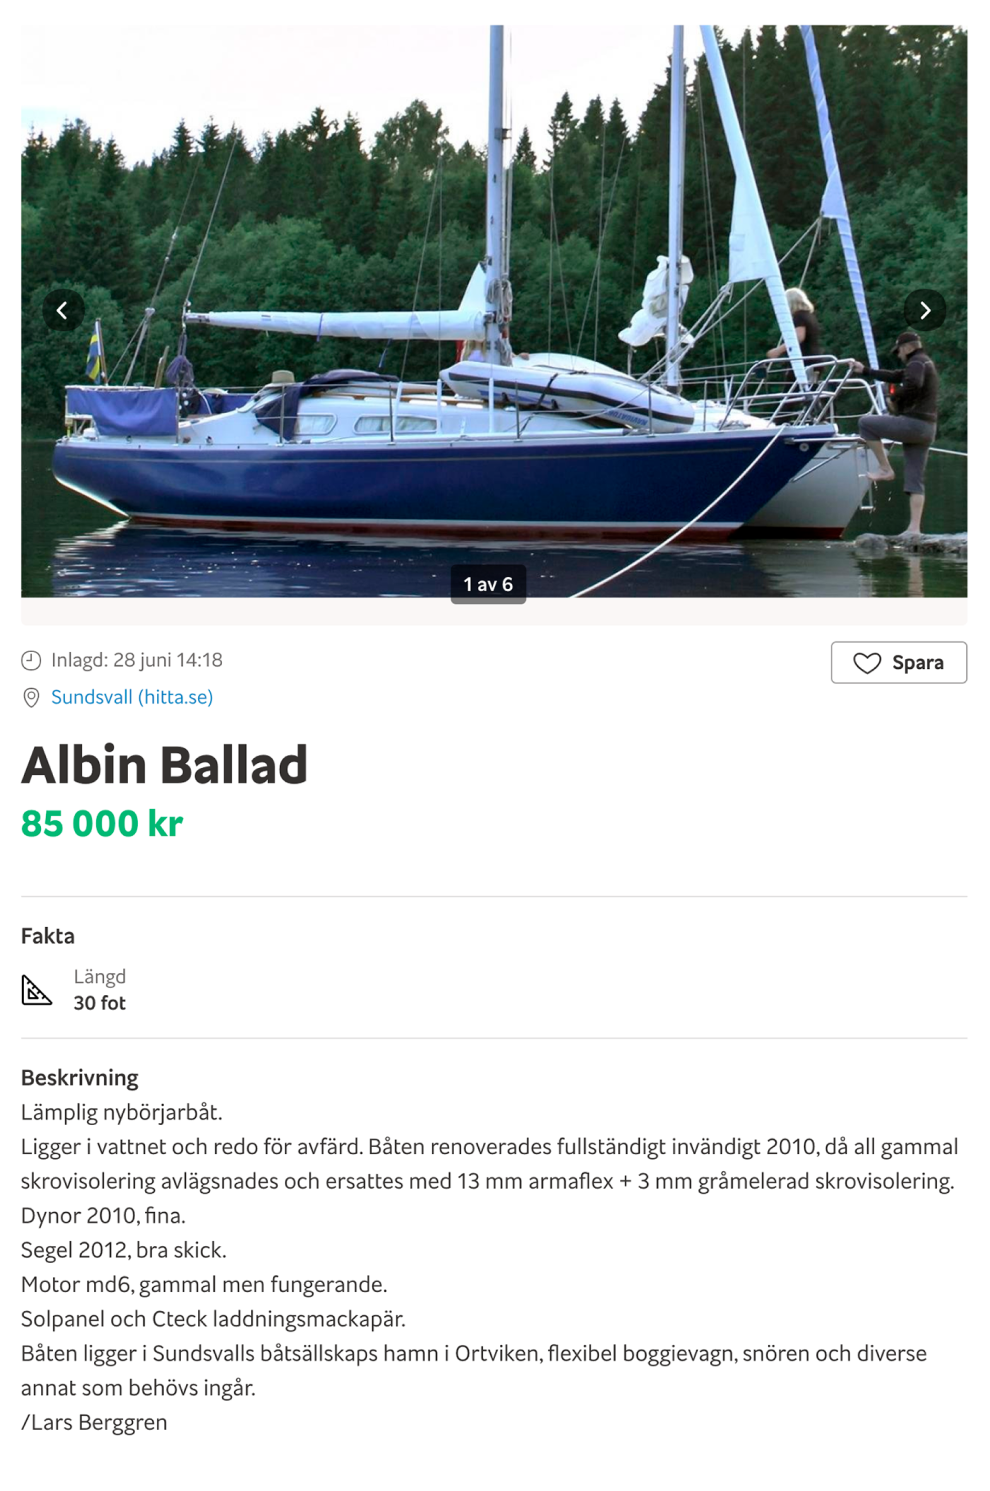 Есть и другие достойные шведские лодки, например Albin Ballad. Она мало чем отличается от Maxi, но дороже на 150 000—200 000 ₽. На шведском сайте Blocket.se по запросу Albin Ballad можно найти сразу семь вариантов. Эта яхта стоит 85 000 kr (722 500 ₽)